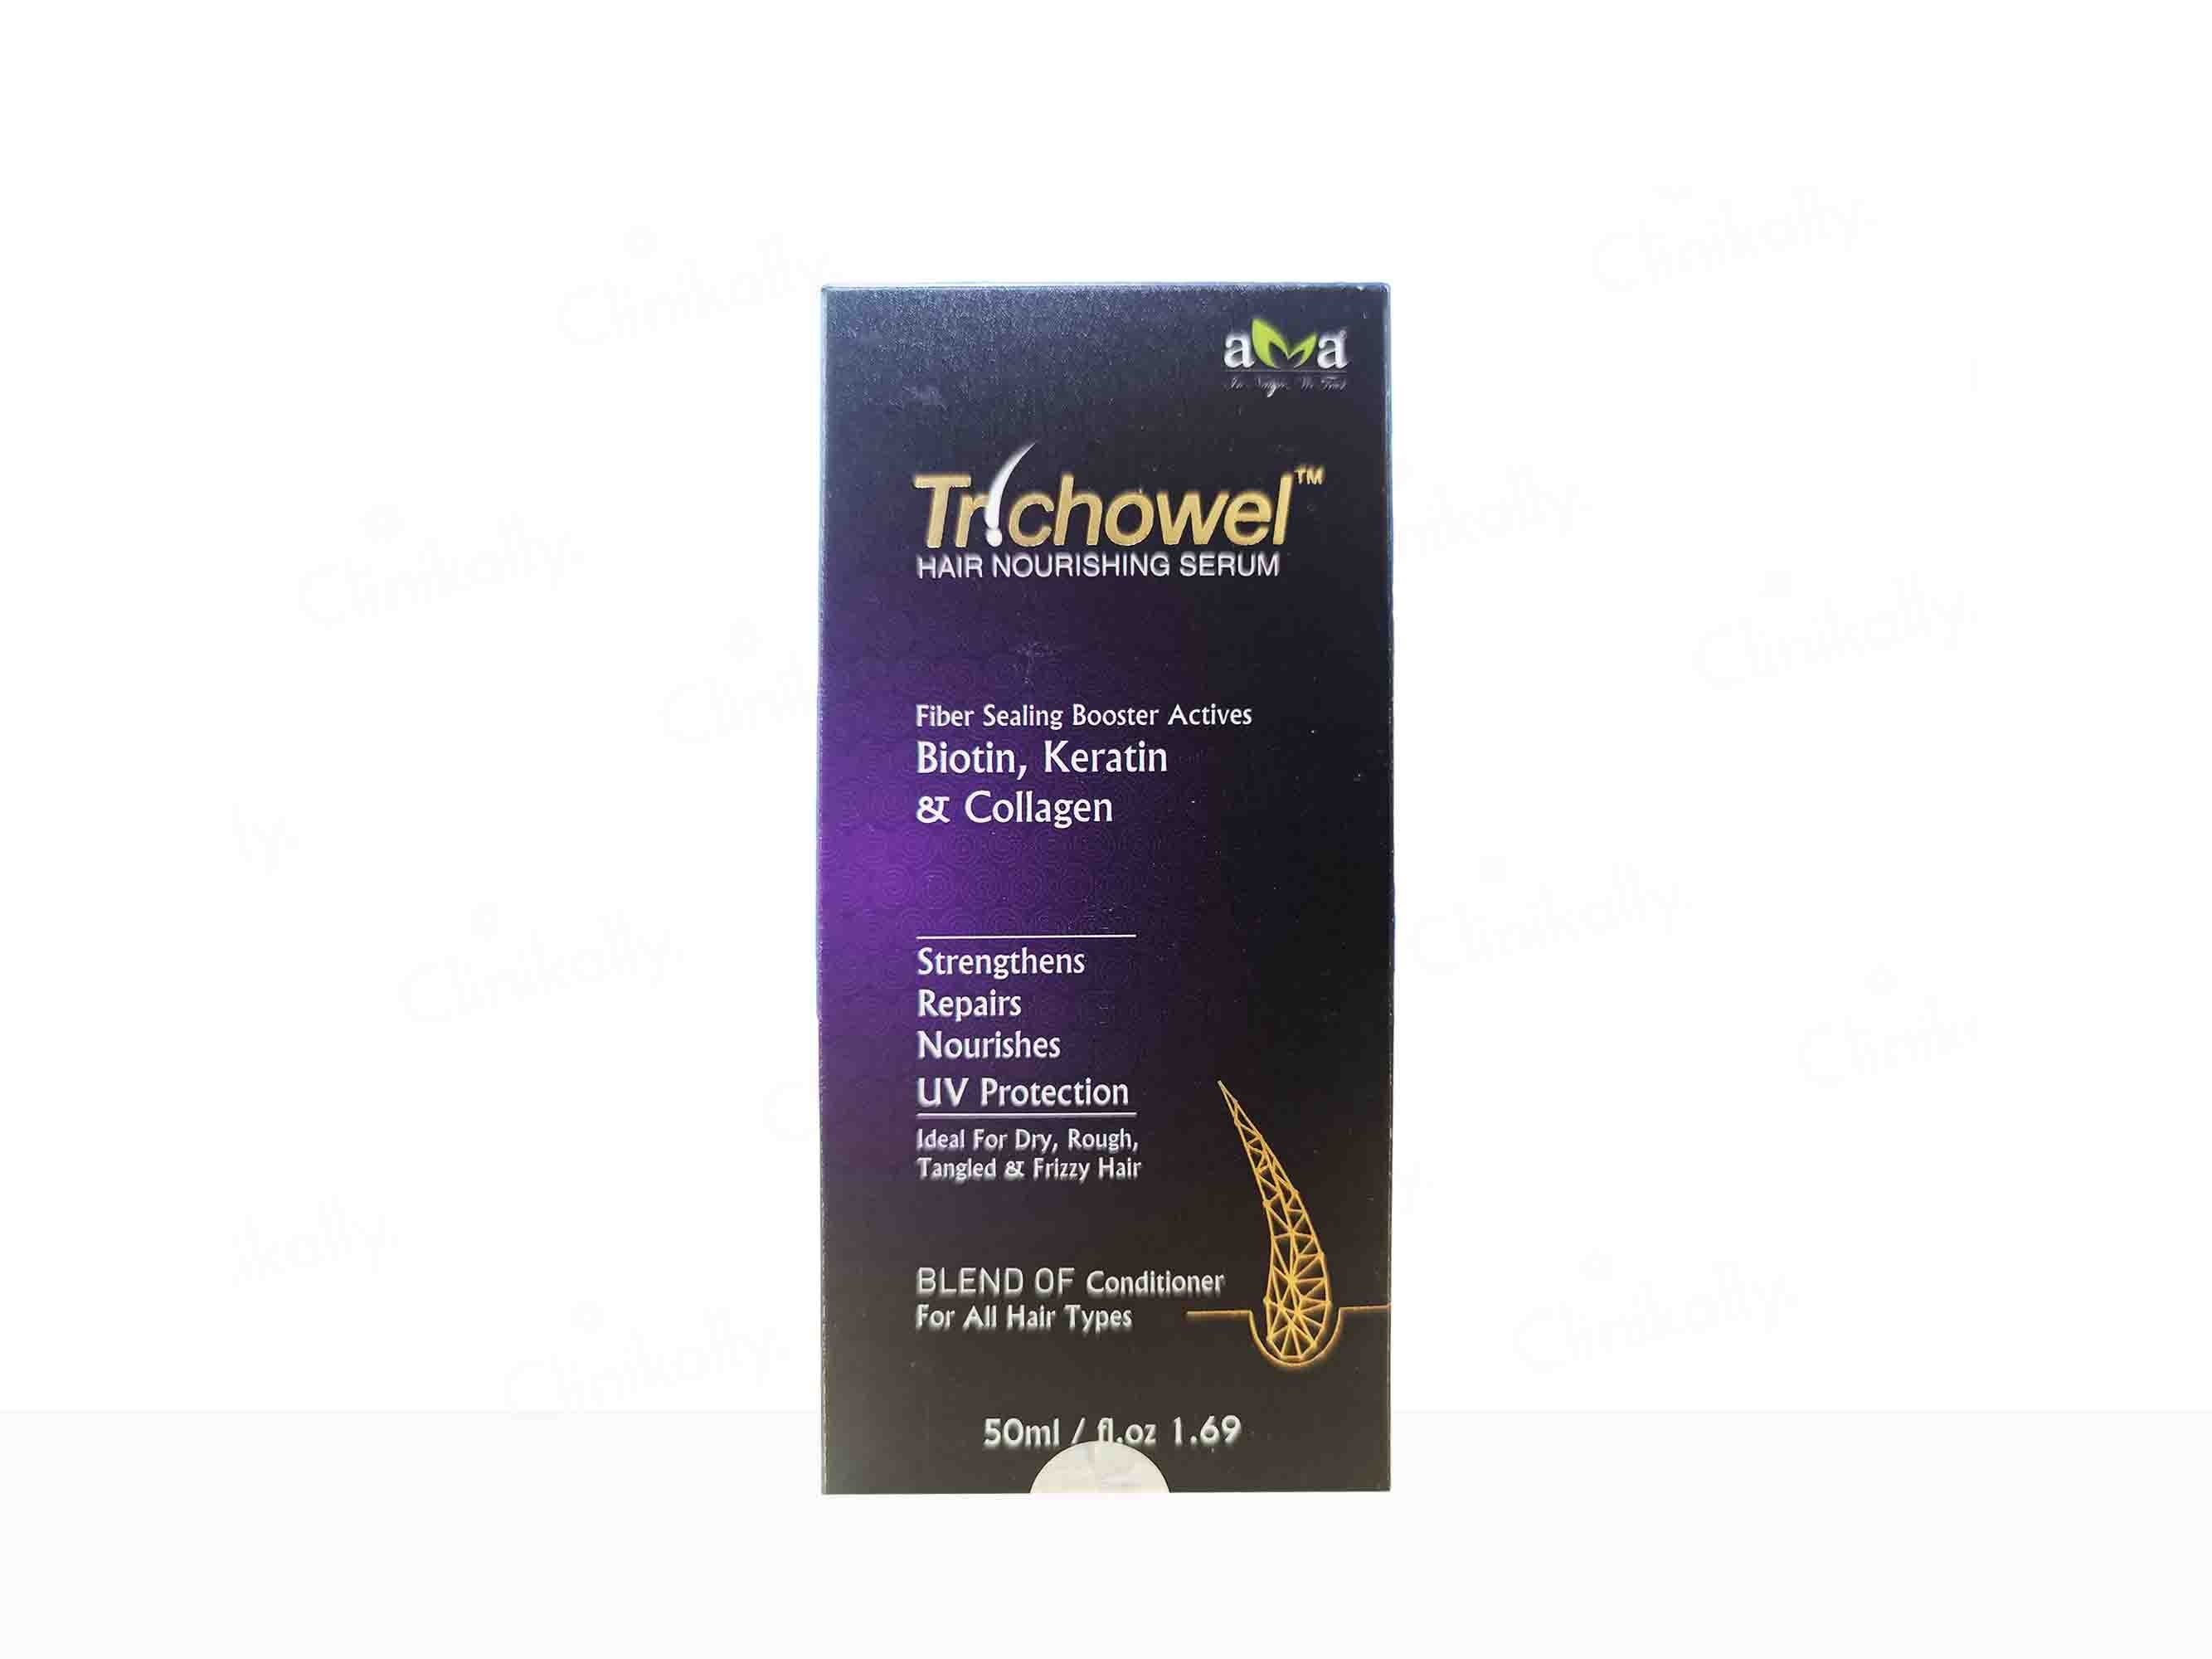 Vegetal Trichowel Hair Nourishing Serum